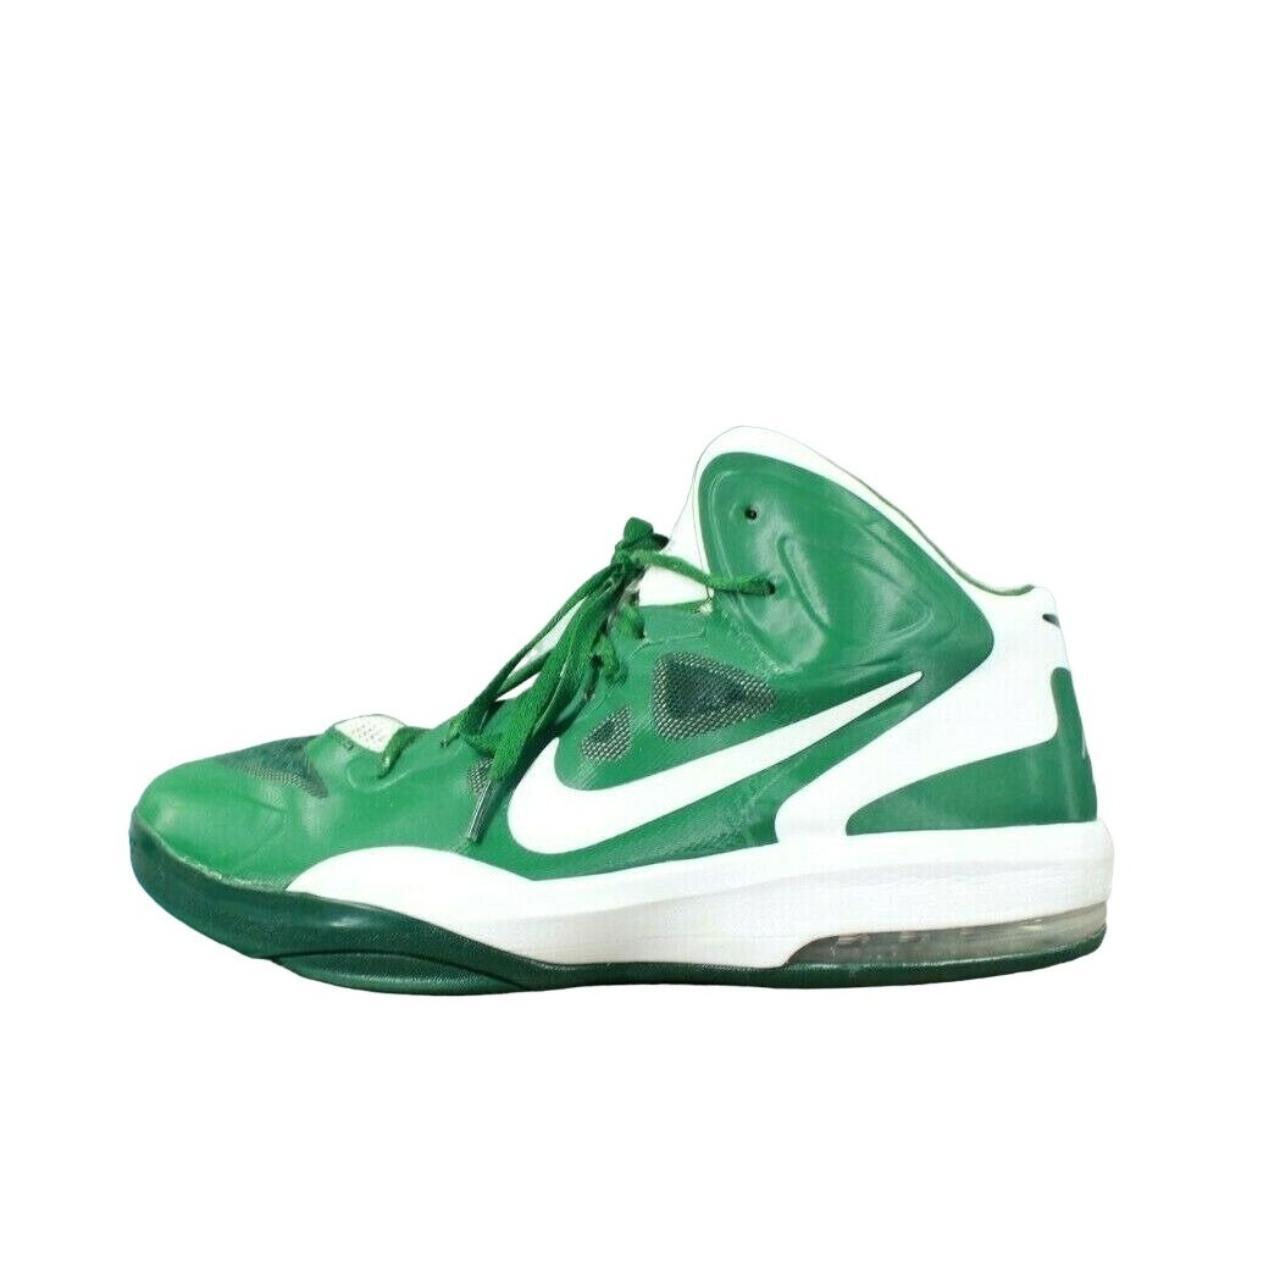 Nike Men's Sneakers - Green - US 14